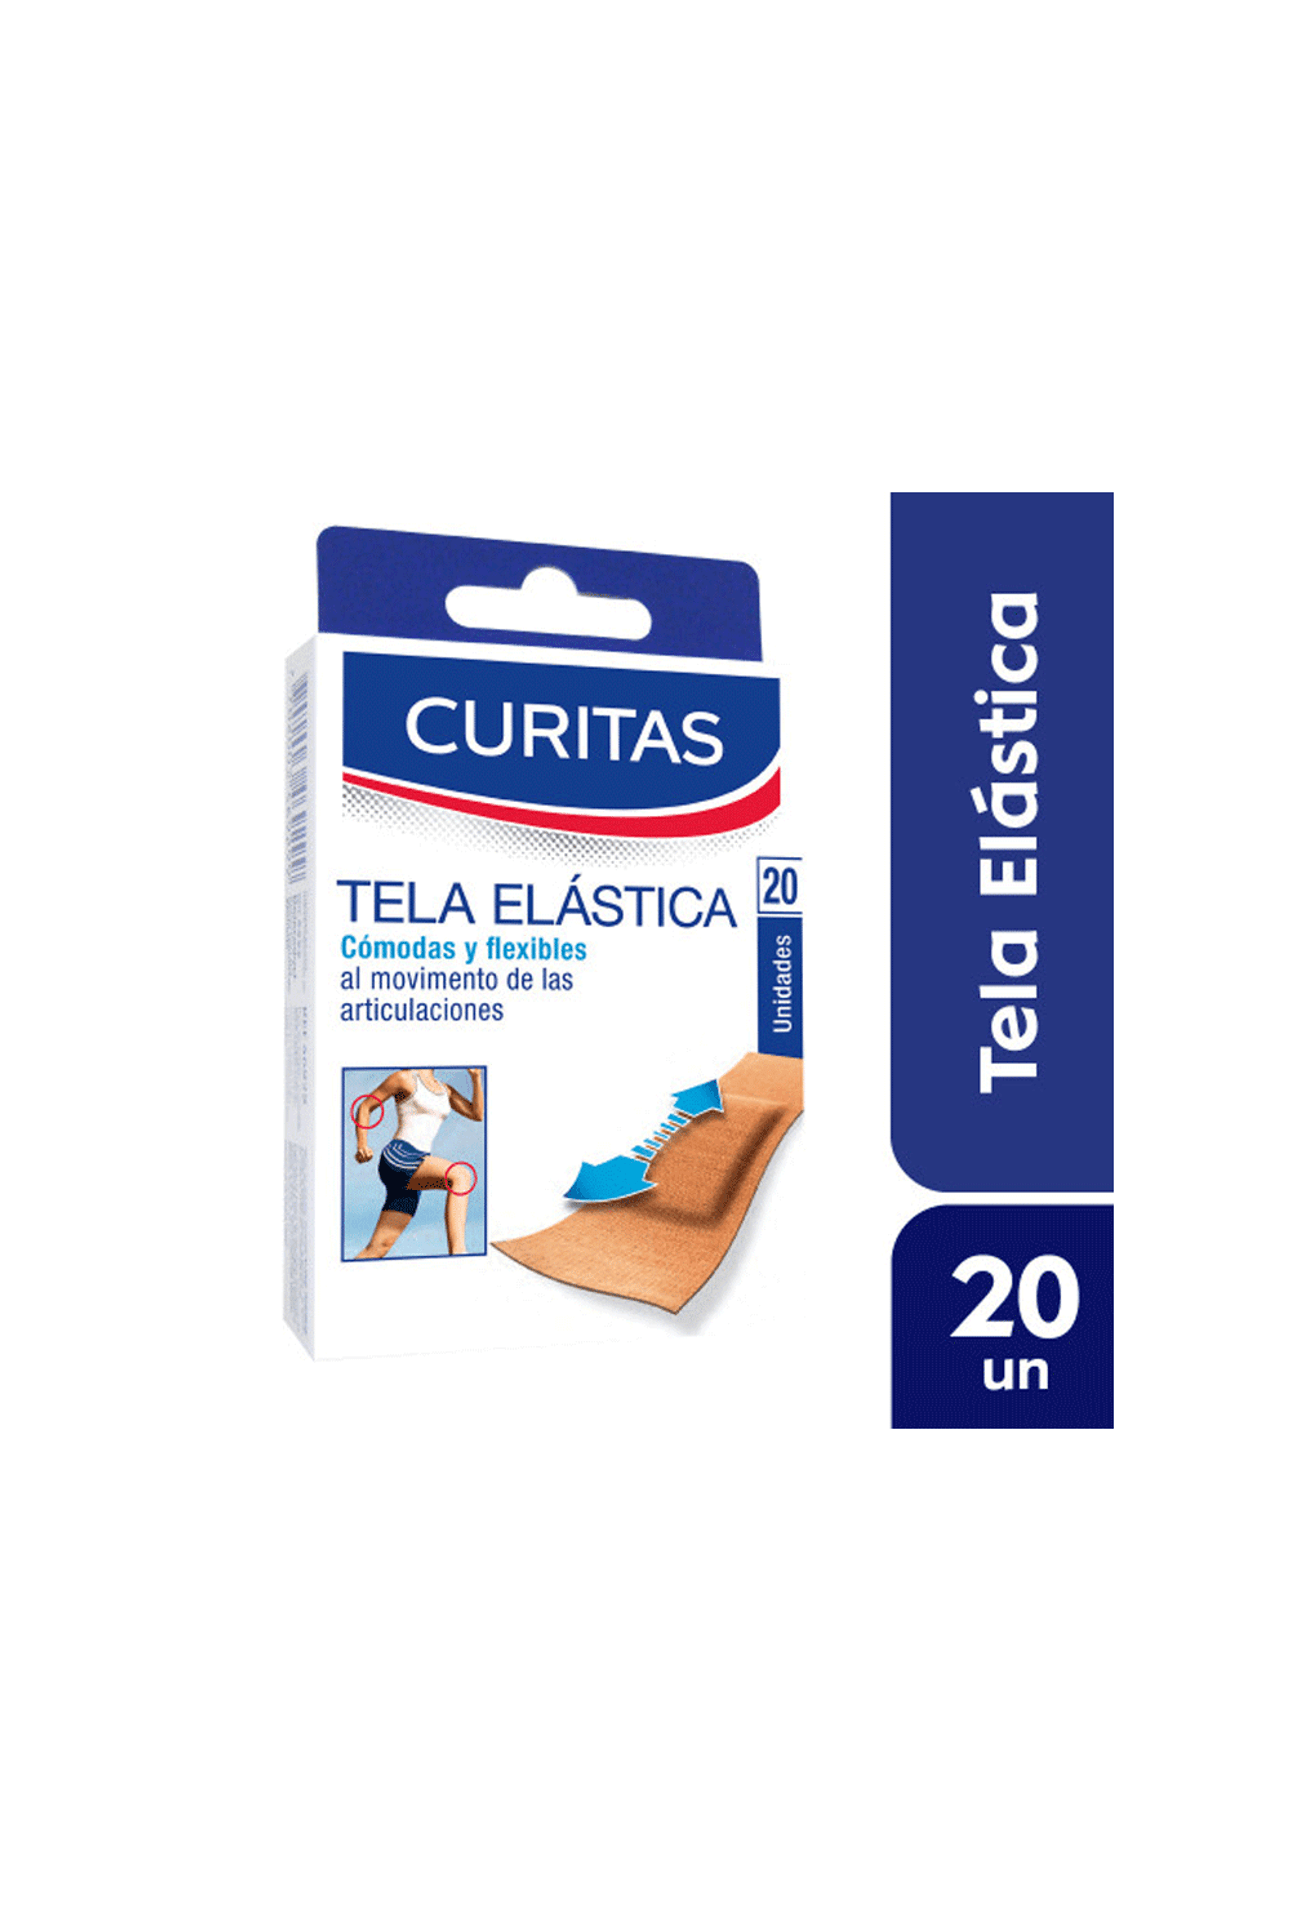 Curitas-Curitas-en-Tela-Elastica-x-20un-7702003010736_img1